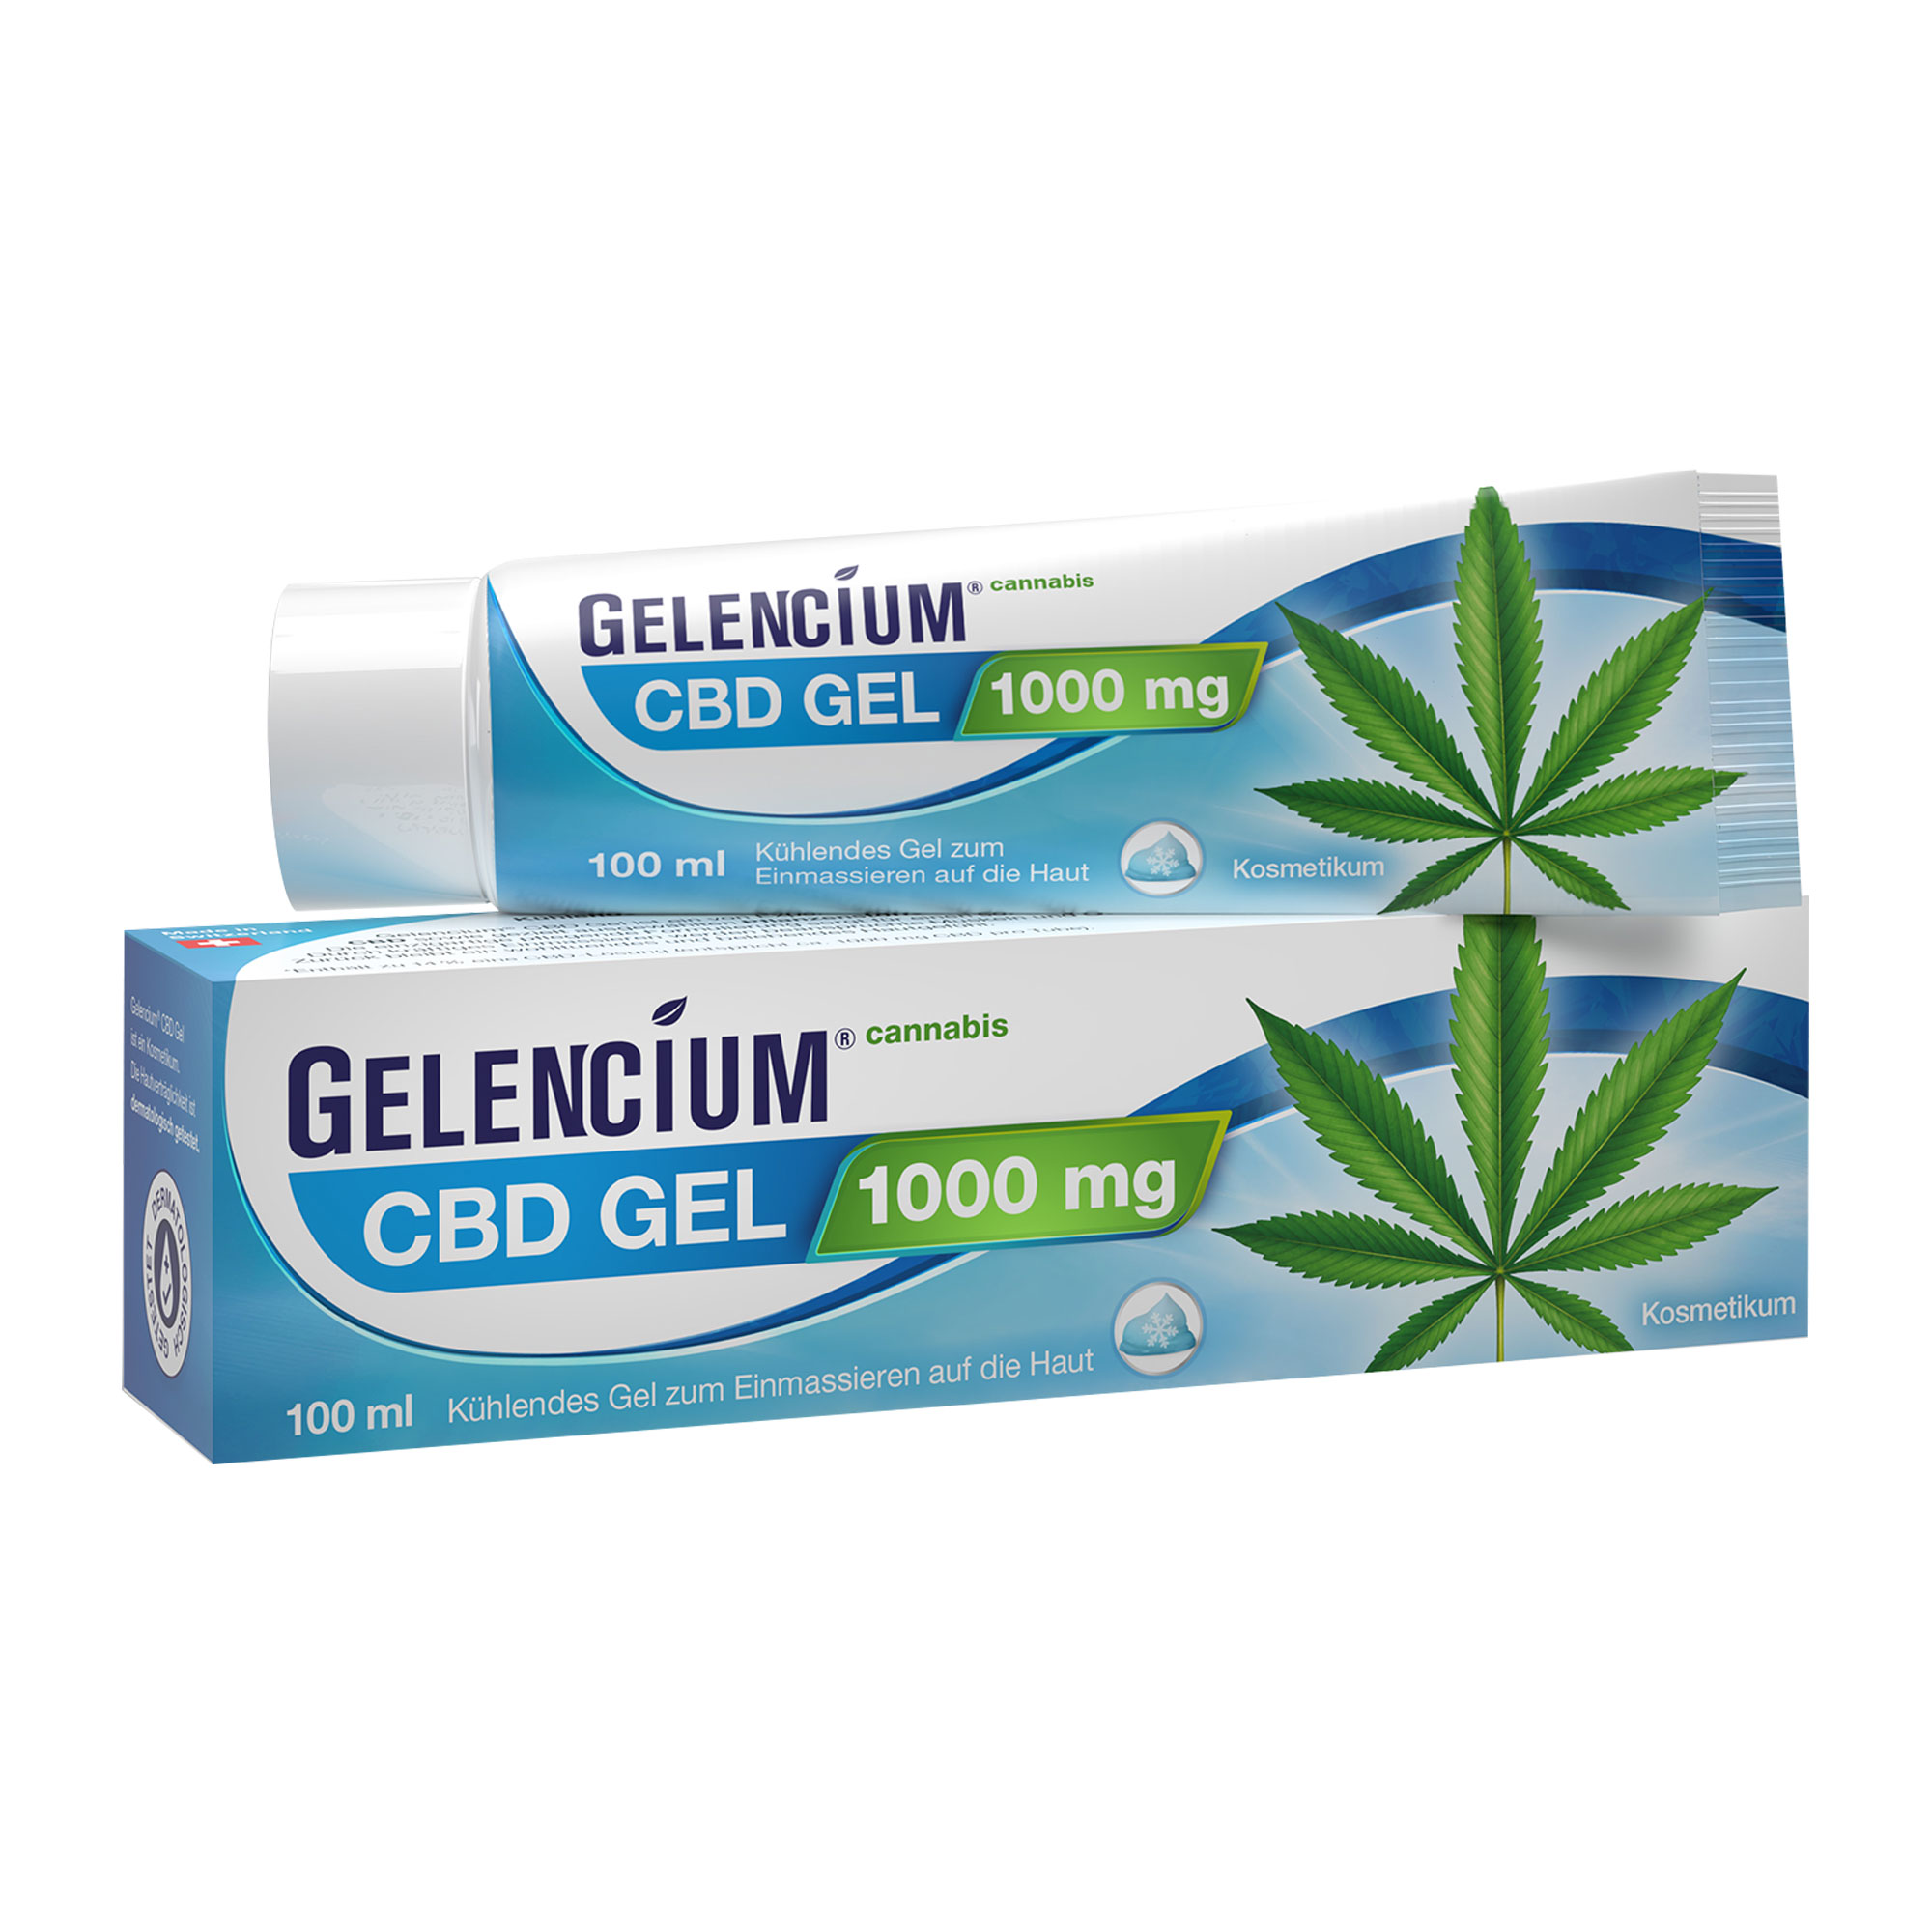 Extra-hochdosiertes Cannabis CBD Gel mit 1000 mg reinem CBD – Starke Cooling Power für Muskeln & Gelenke.